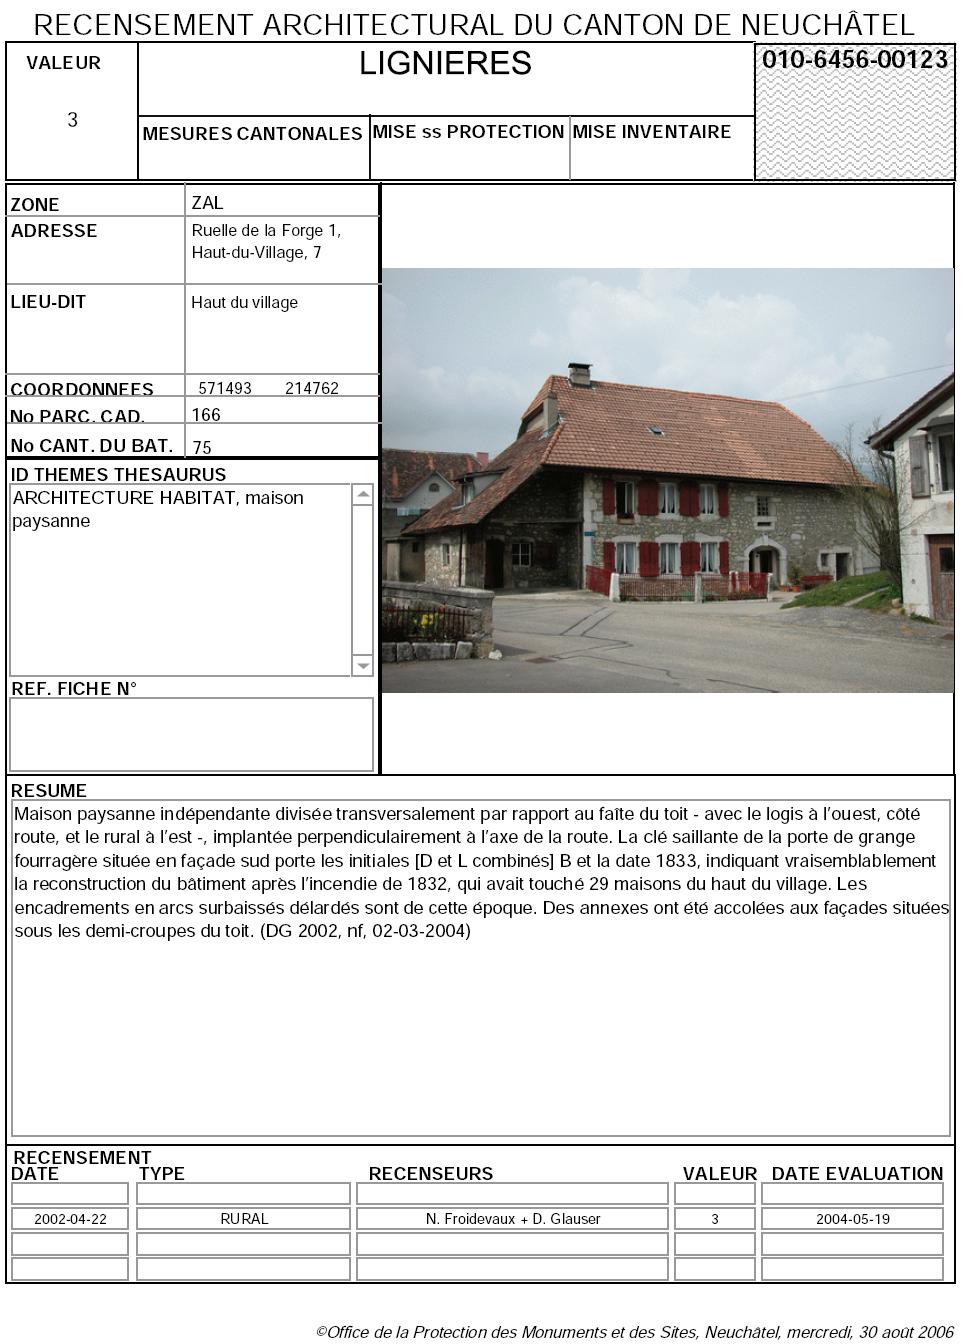 Recensement architectural du canton de Neuchâtel: Fiche 010-6456-00123